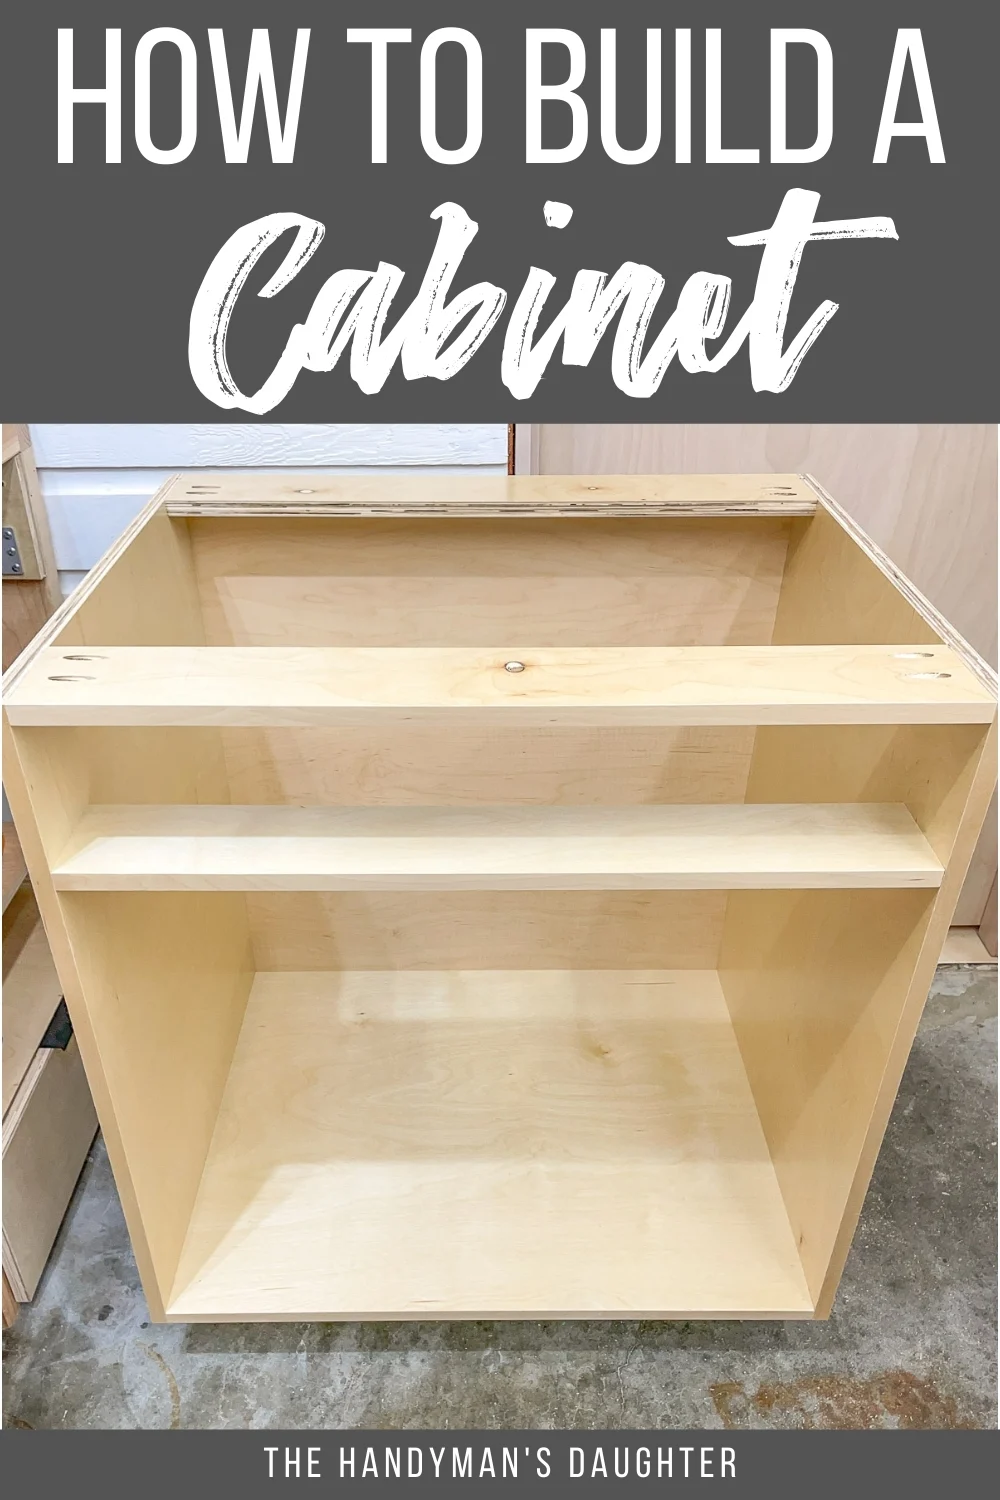 Custom Size Plywood Cabinet Shelves